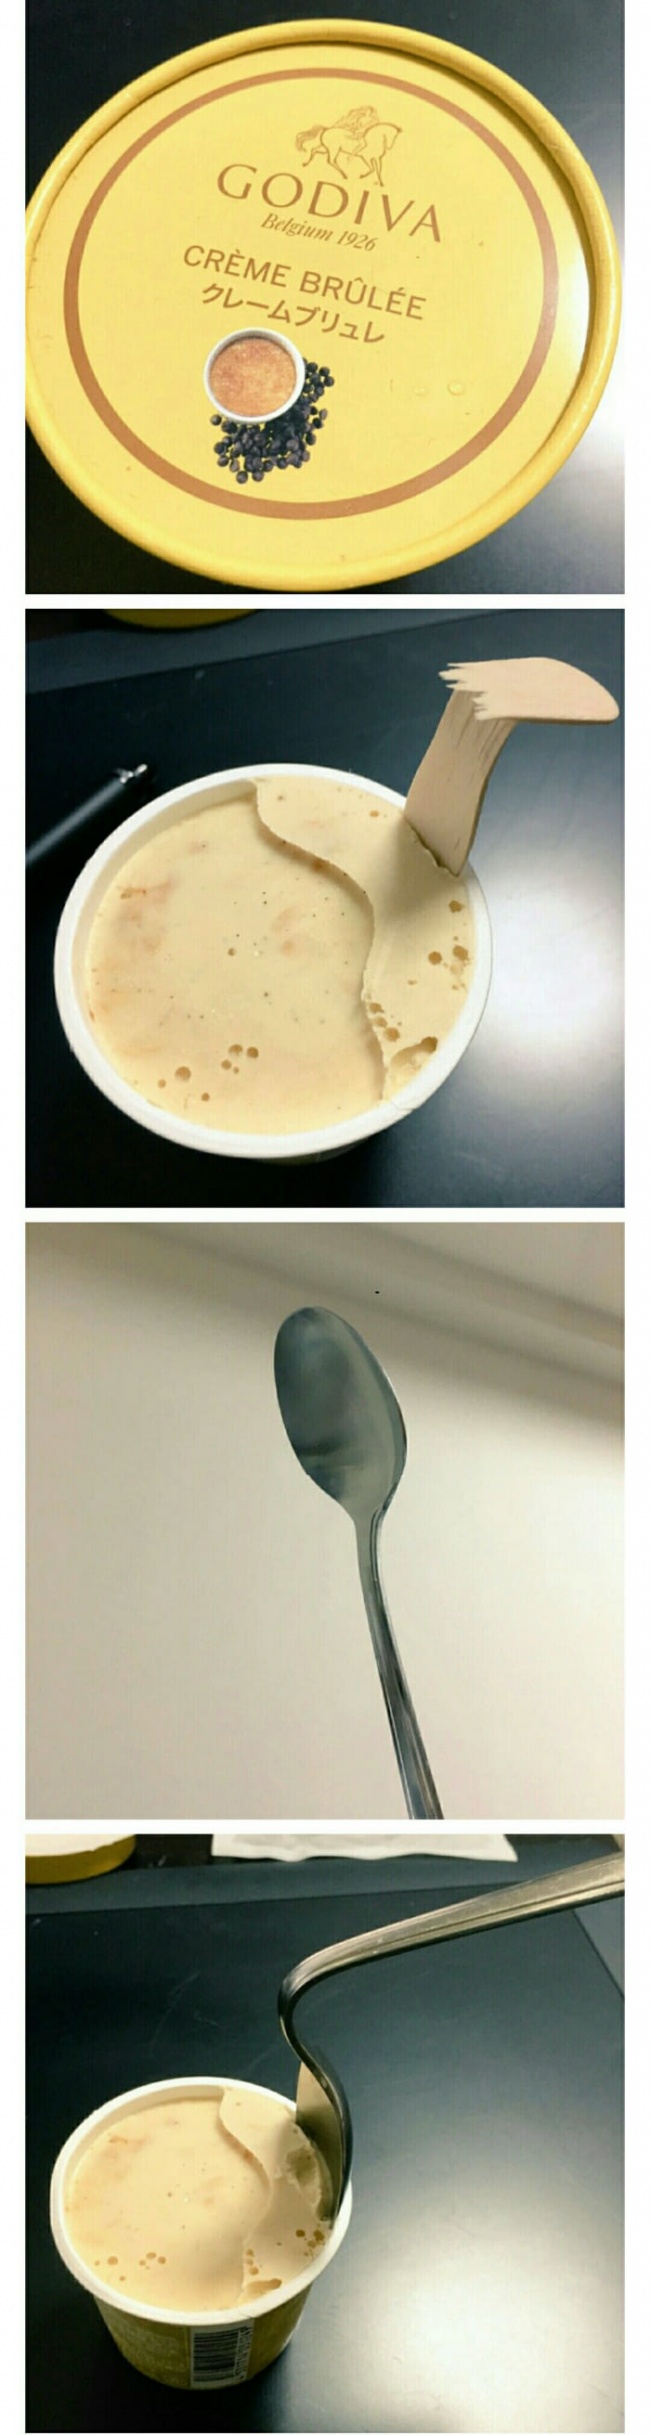 Ice cream vs spoon